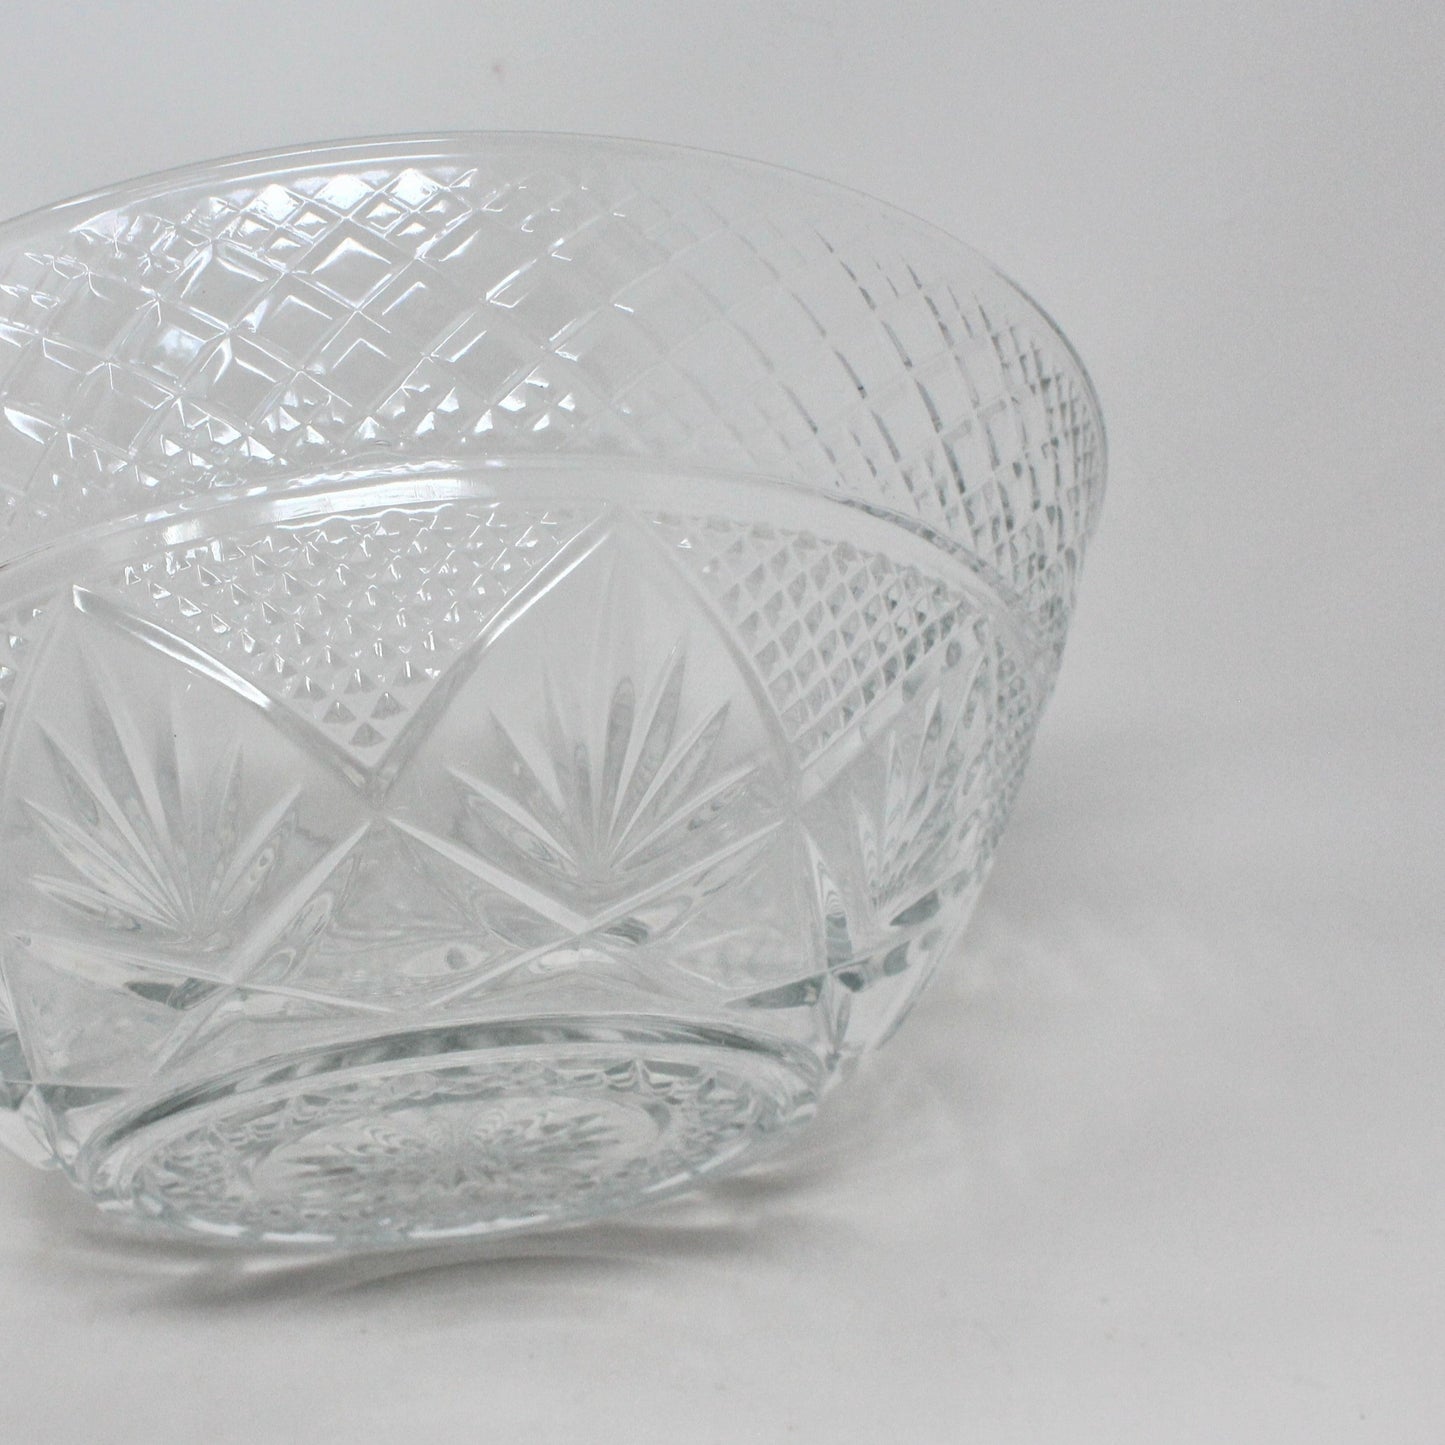 Serving Bowl, Cristal D'Arques-Durand, Antique Clear, Glass